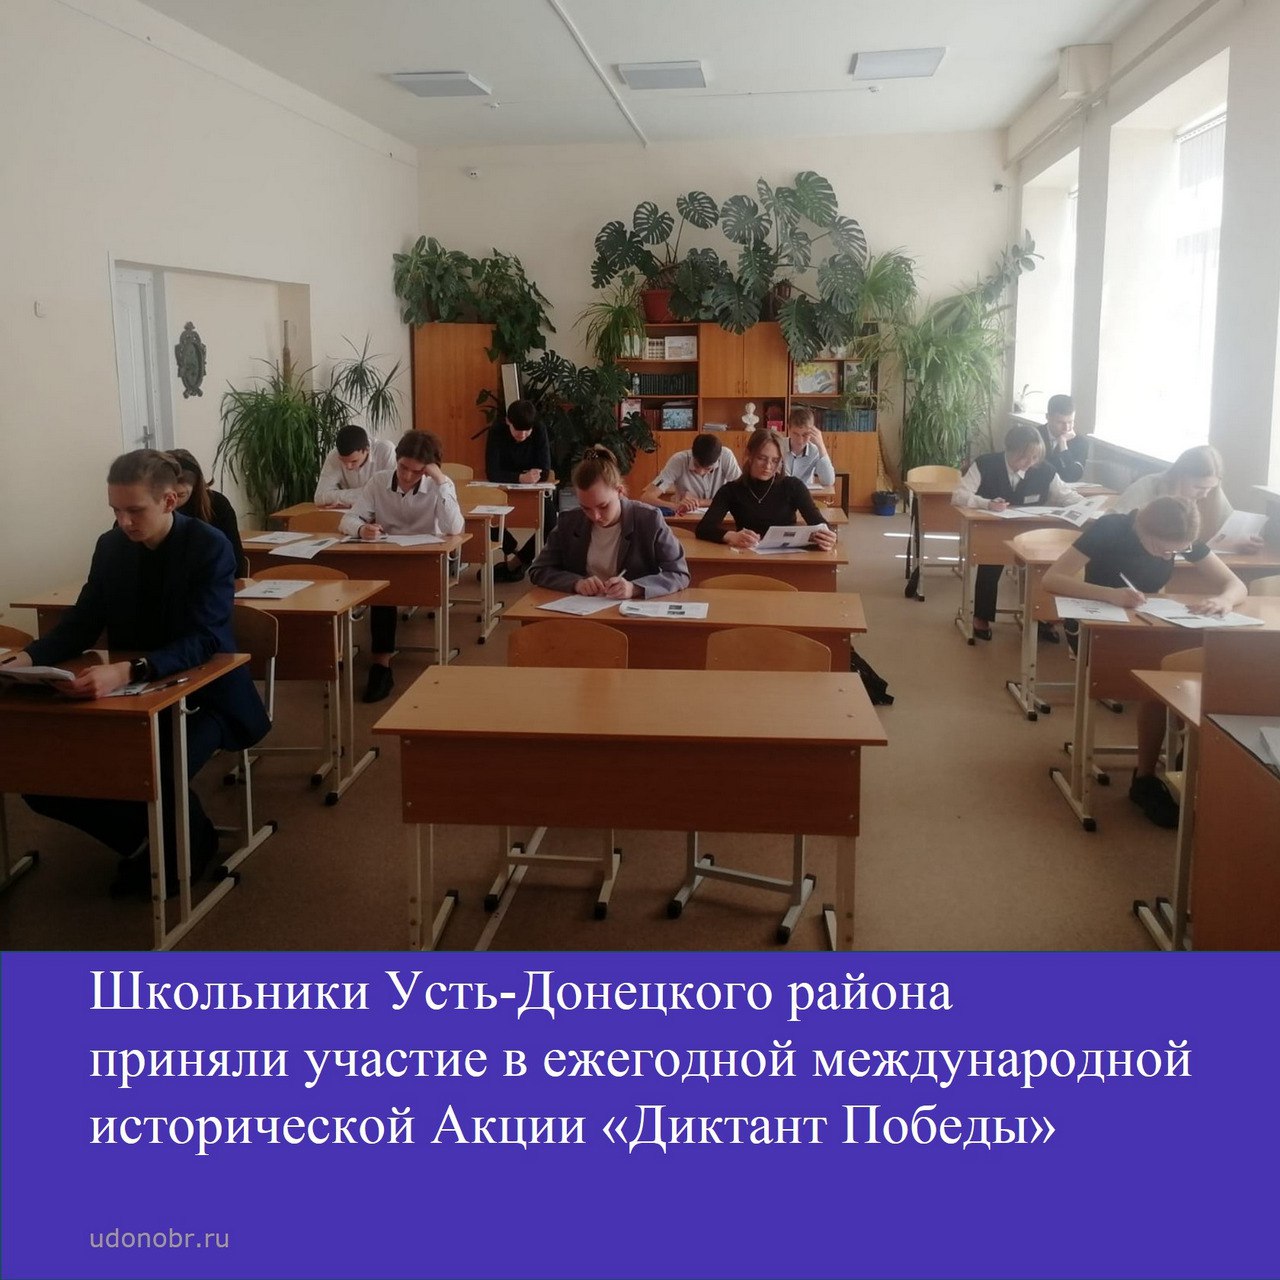 Школьники Усть-Донецкого района приняли участие в ежегодной международной исторической Акции «Диктант Победы»